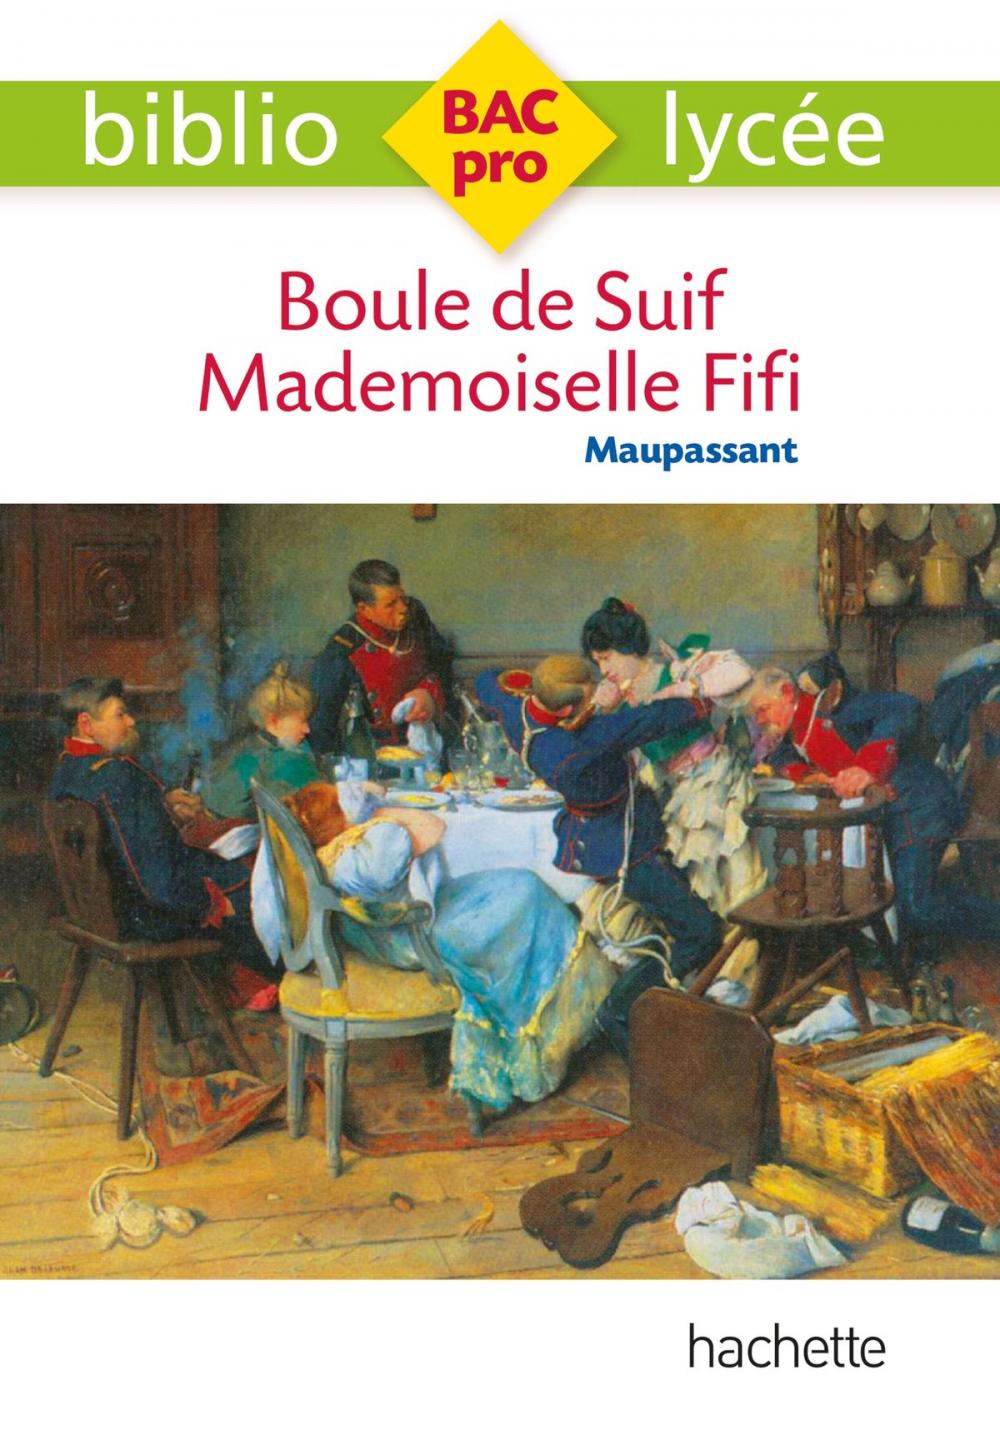 Big bigCover of Bibliolycée Pro Boule de suif - Mademoiselle Fifi